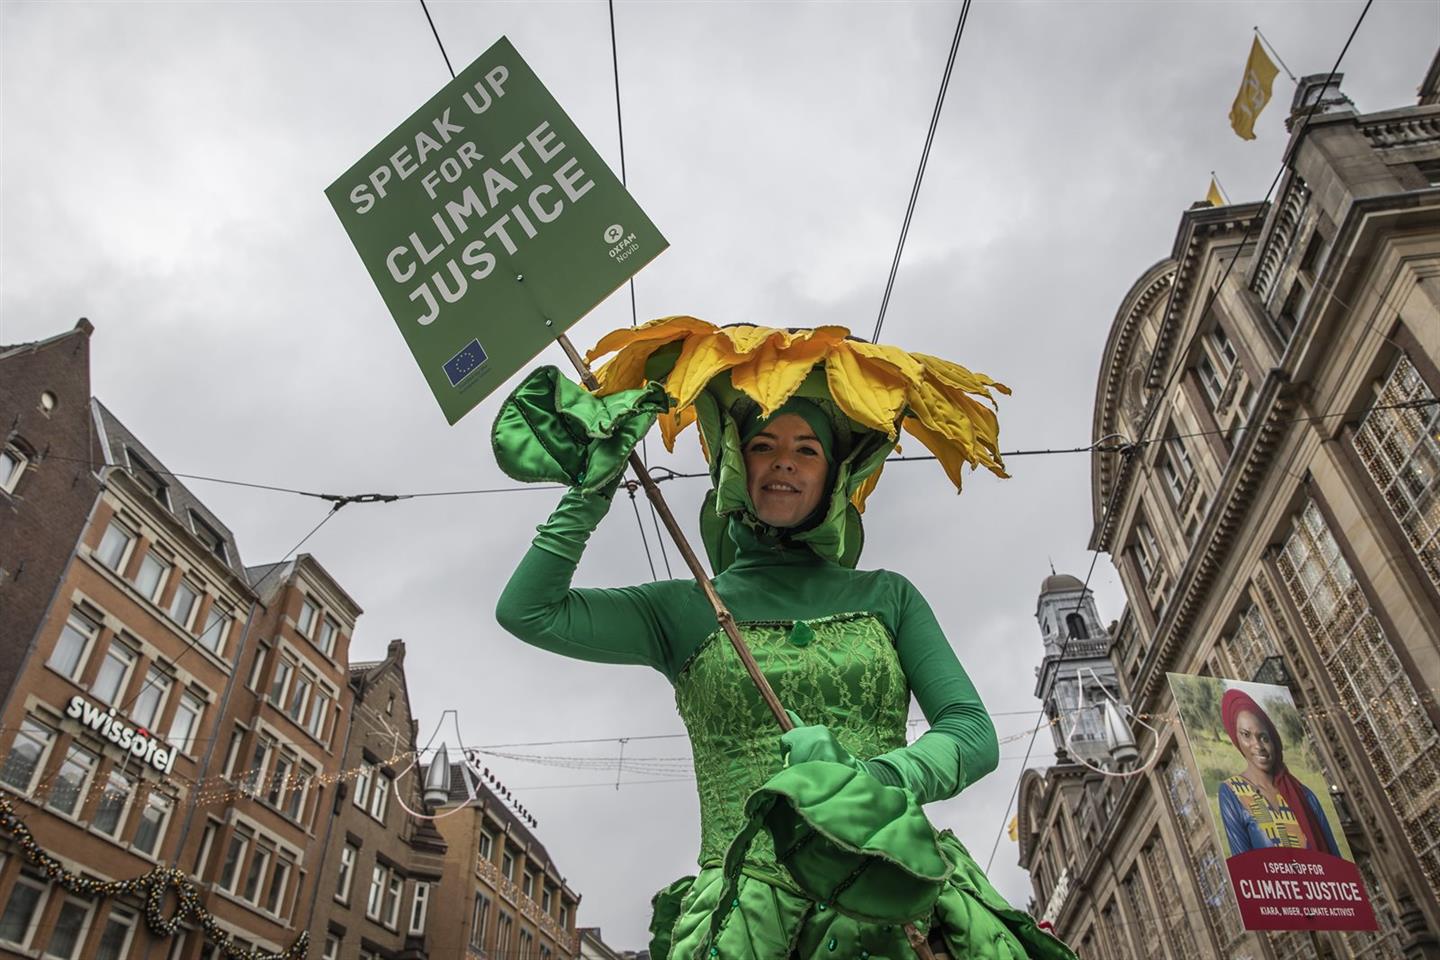 Een vrouw in een zonnebloemkostuum met een protestbord 'Speak up for Climate justice'